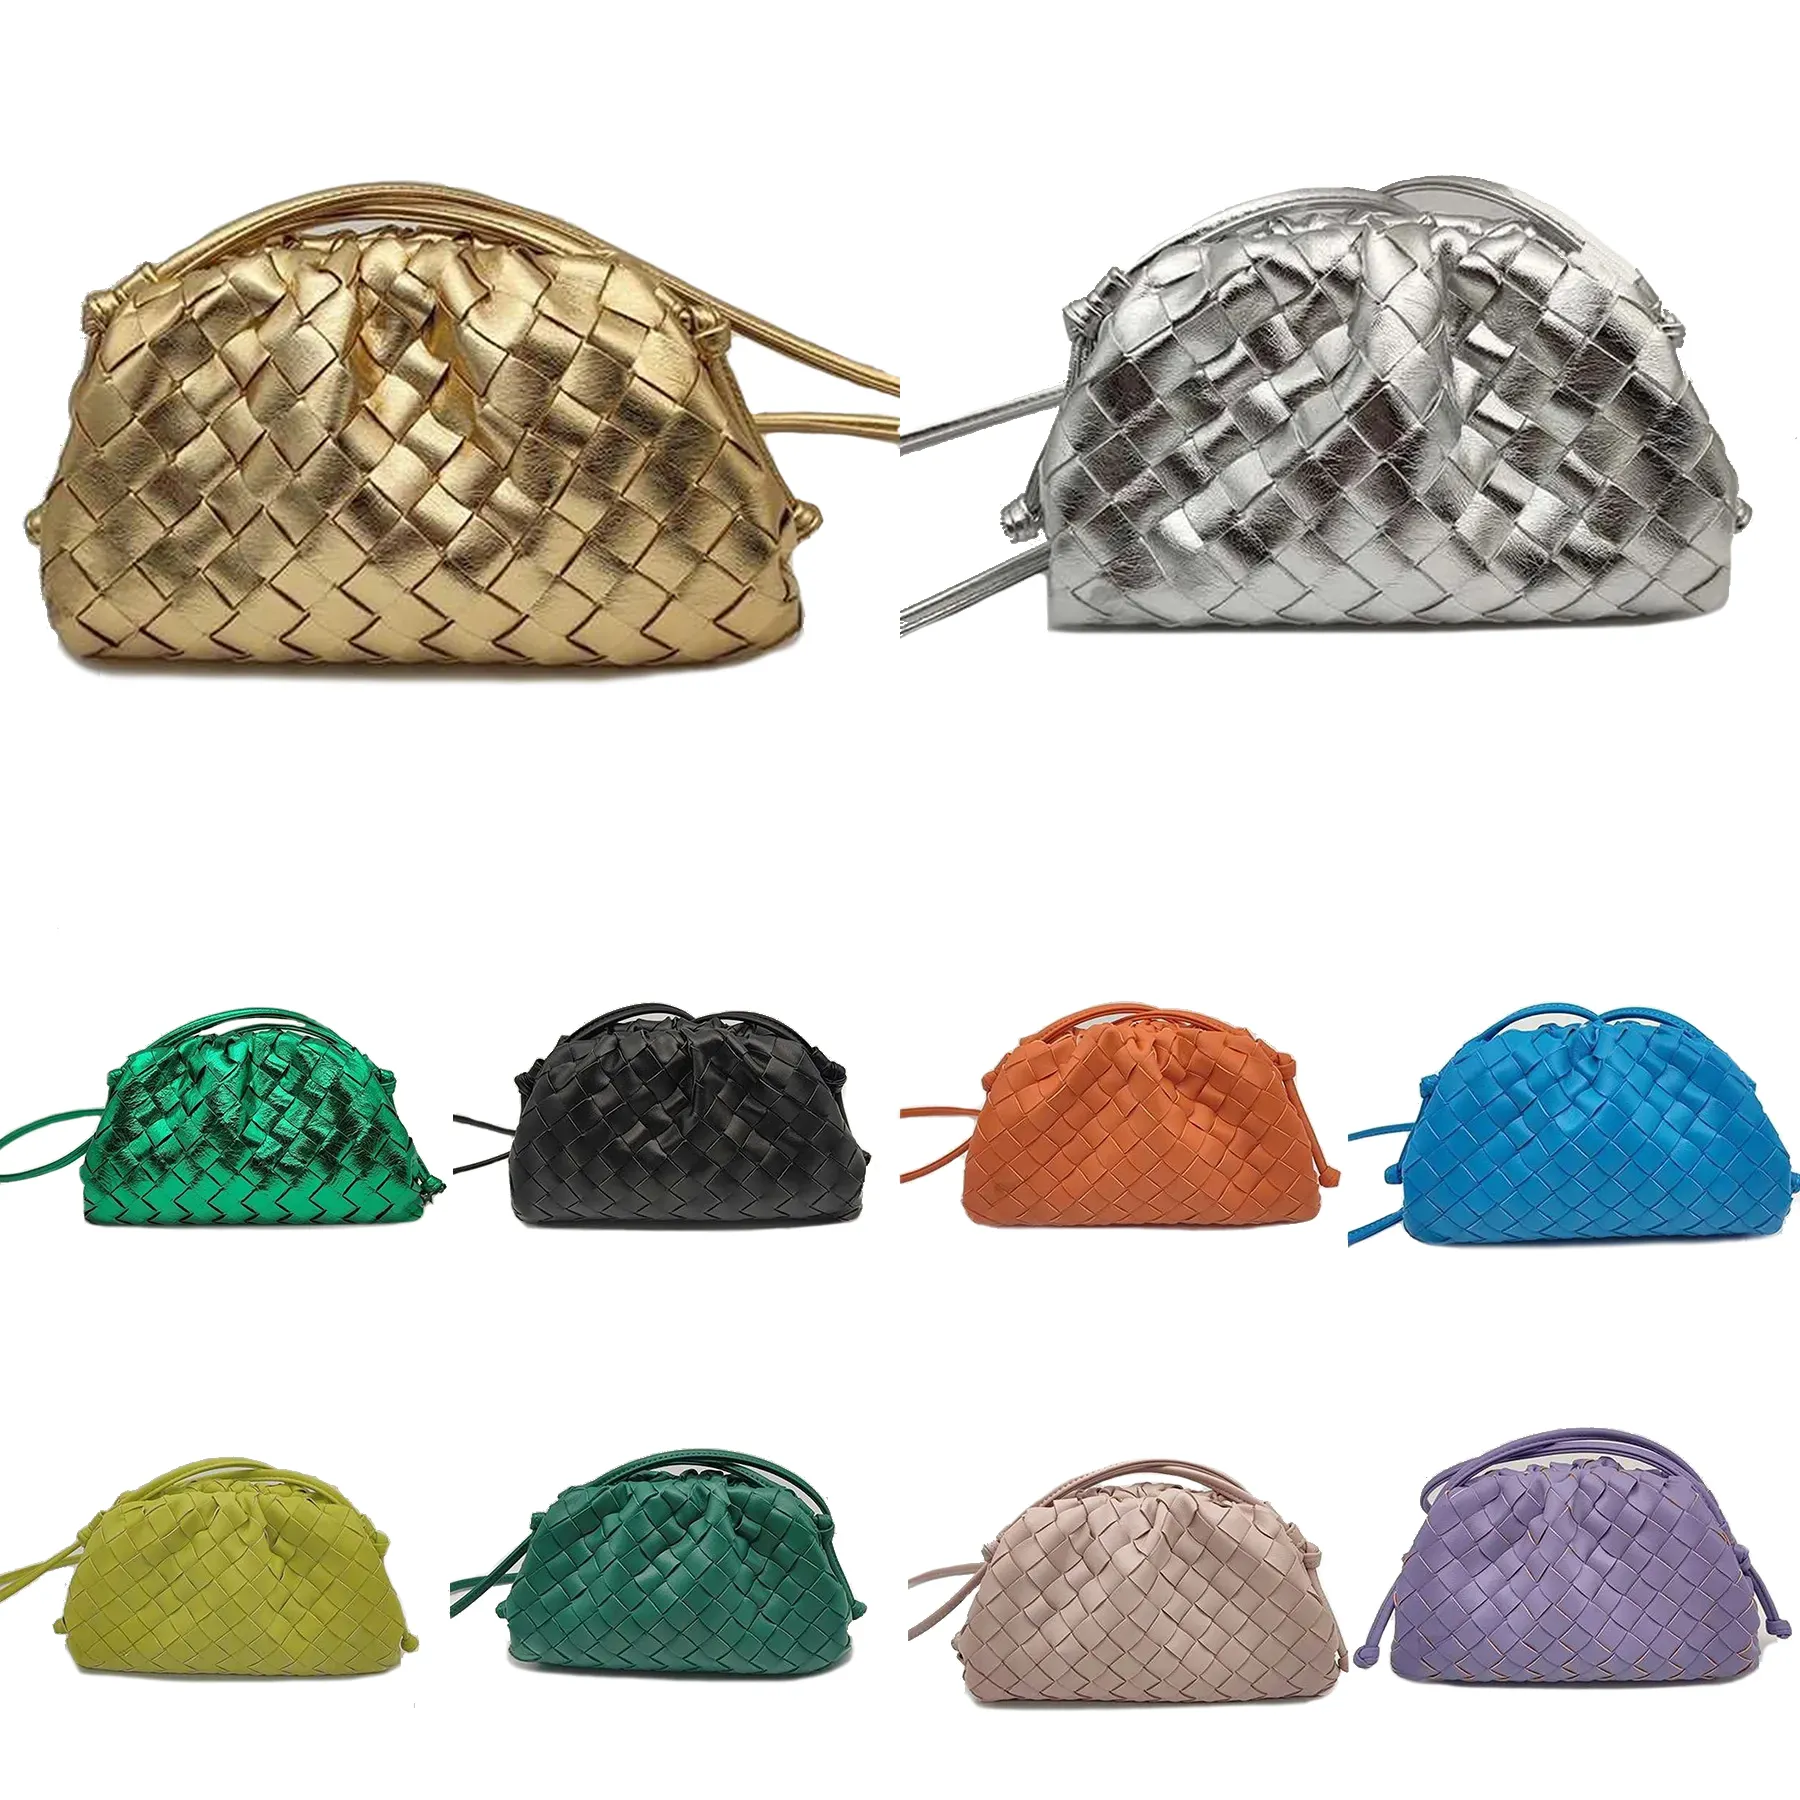 Luxurys Mini pochette Totes borse 10a borsa a tracolla di design di qualità da donna in pelle argento oro intrecciato hobo pochette da uomo weekend anche borsa a tracolla moda trucco